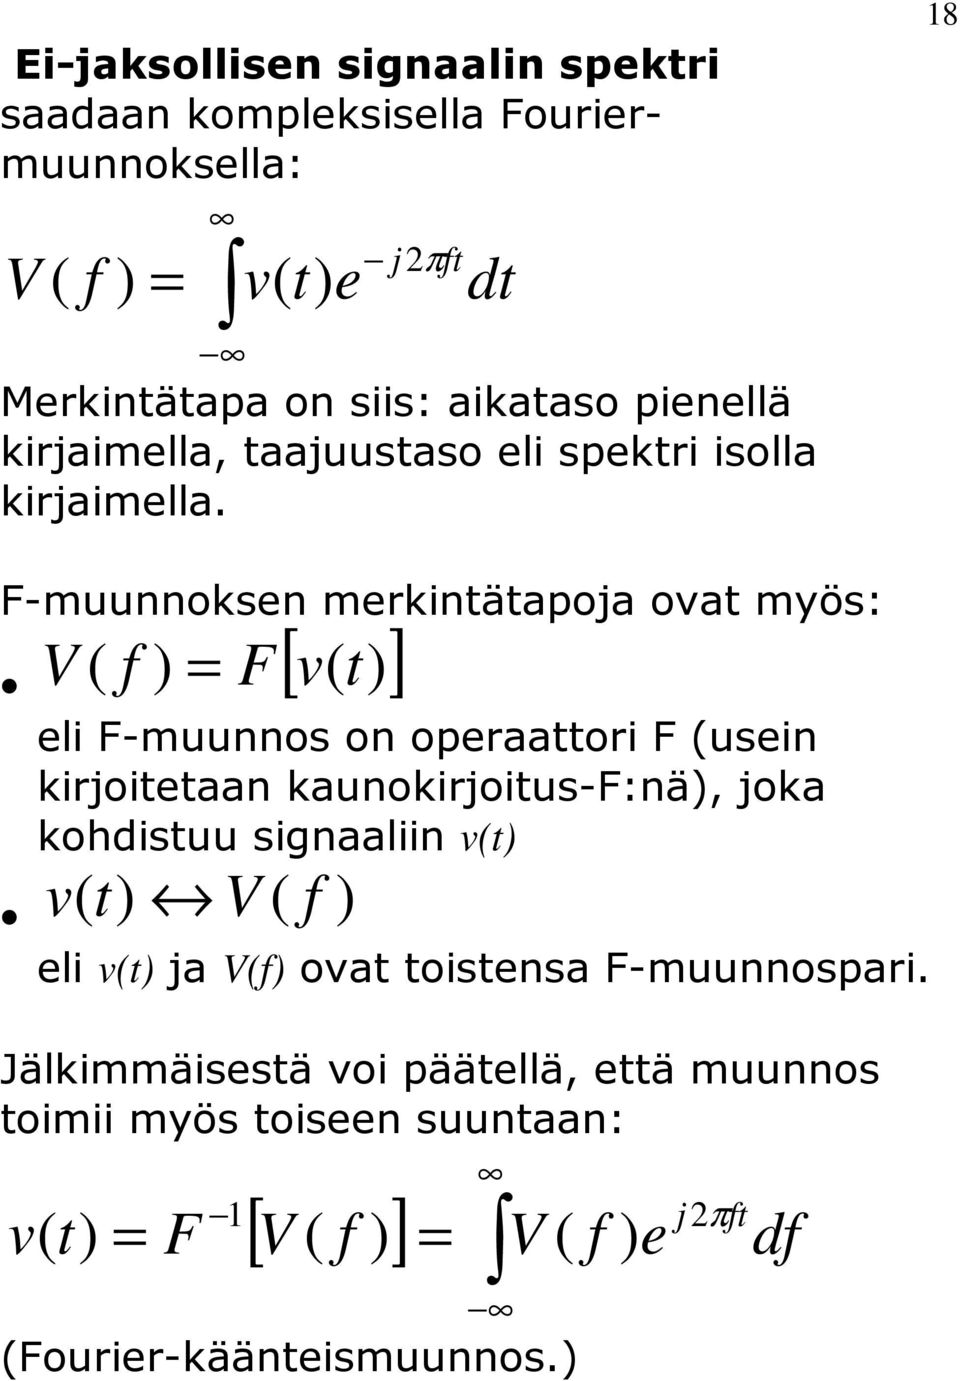 18 F-muunnoksen merkinäapoja ova myös: [ ] V F v eli F-muunnos on operaaori F usein kirjoieaan kaunokirjoius-f:nä,